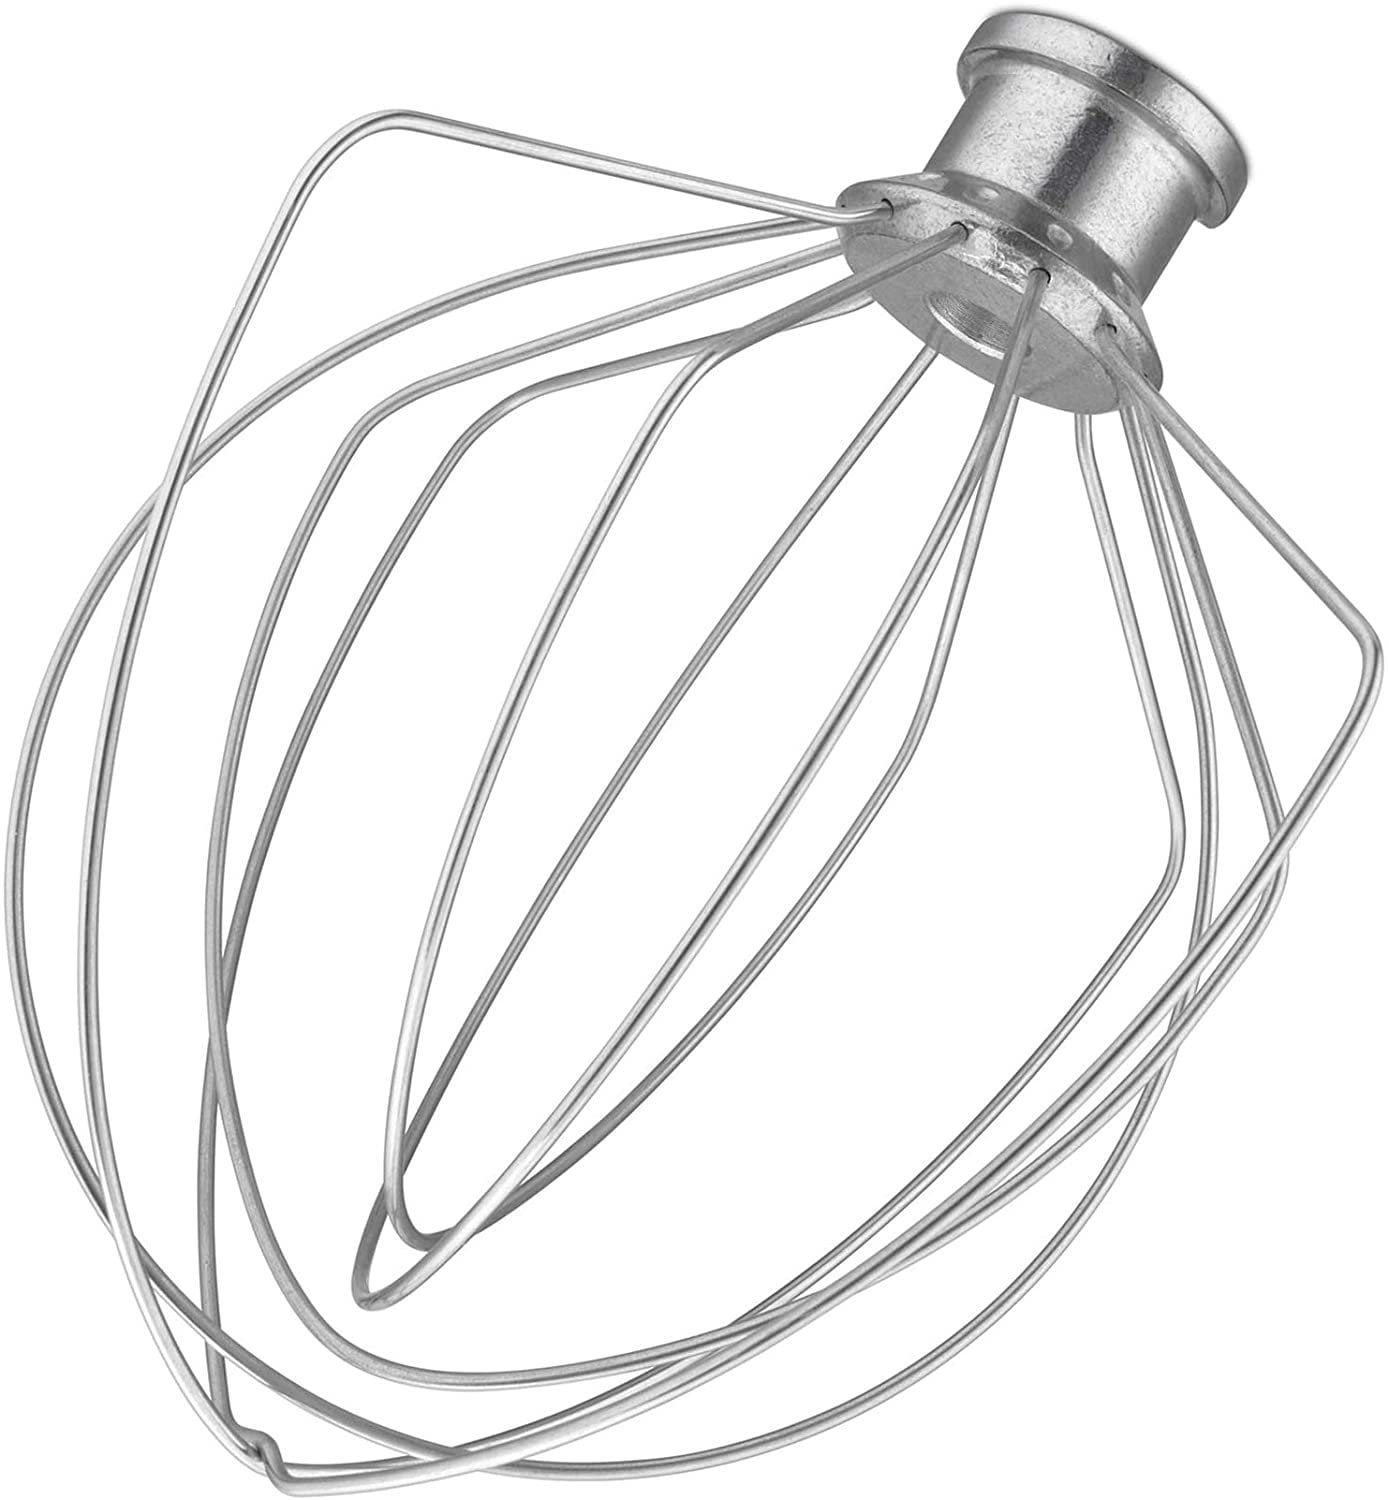 9707637 - KitchenAid Wire Whip